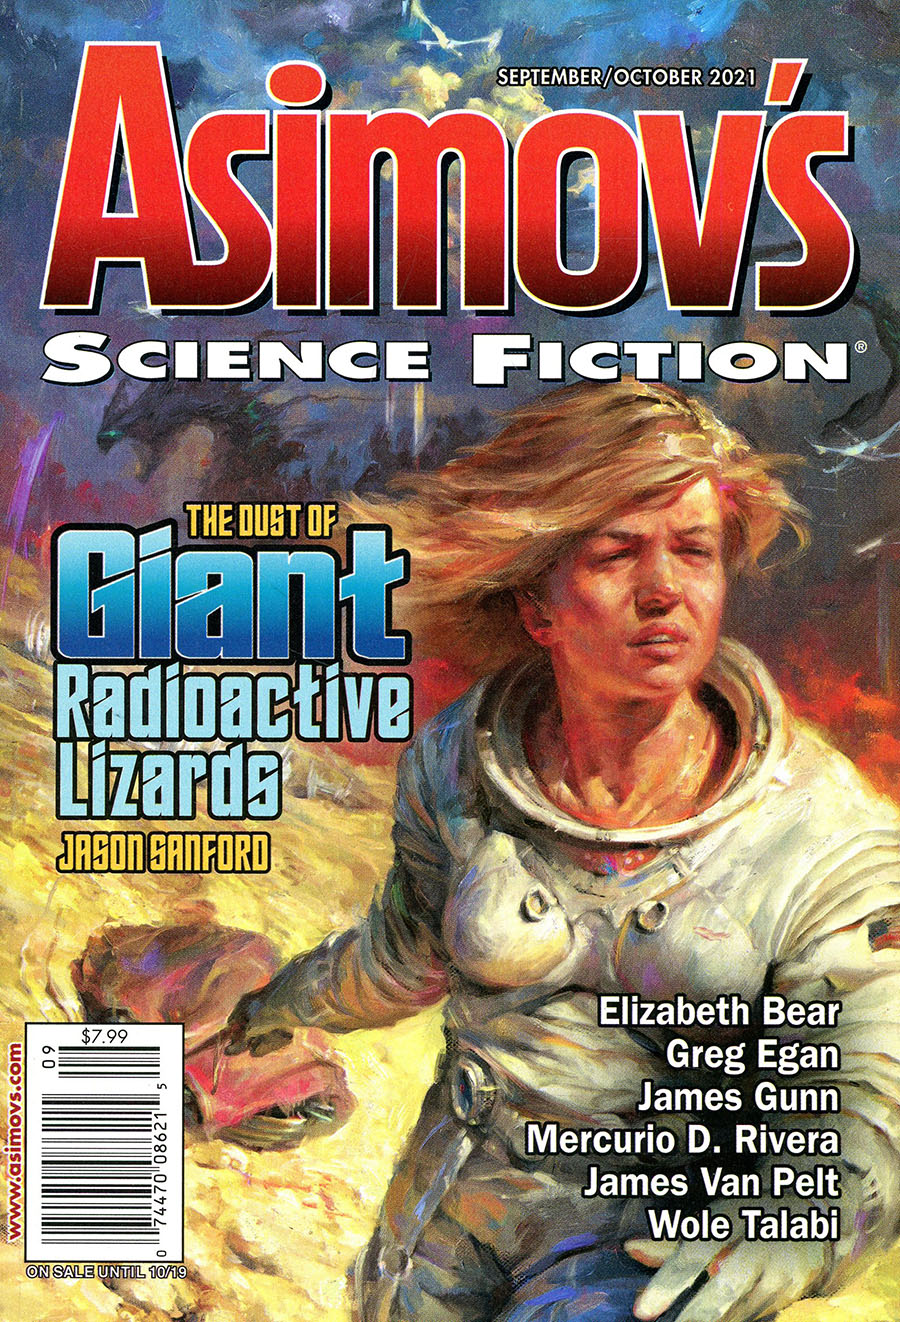 Asimovs Science Fiction Vol 45 #09 & 10 September / October 2021